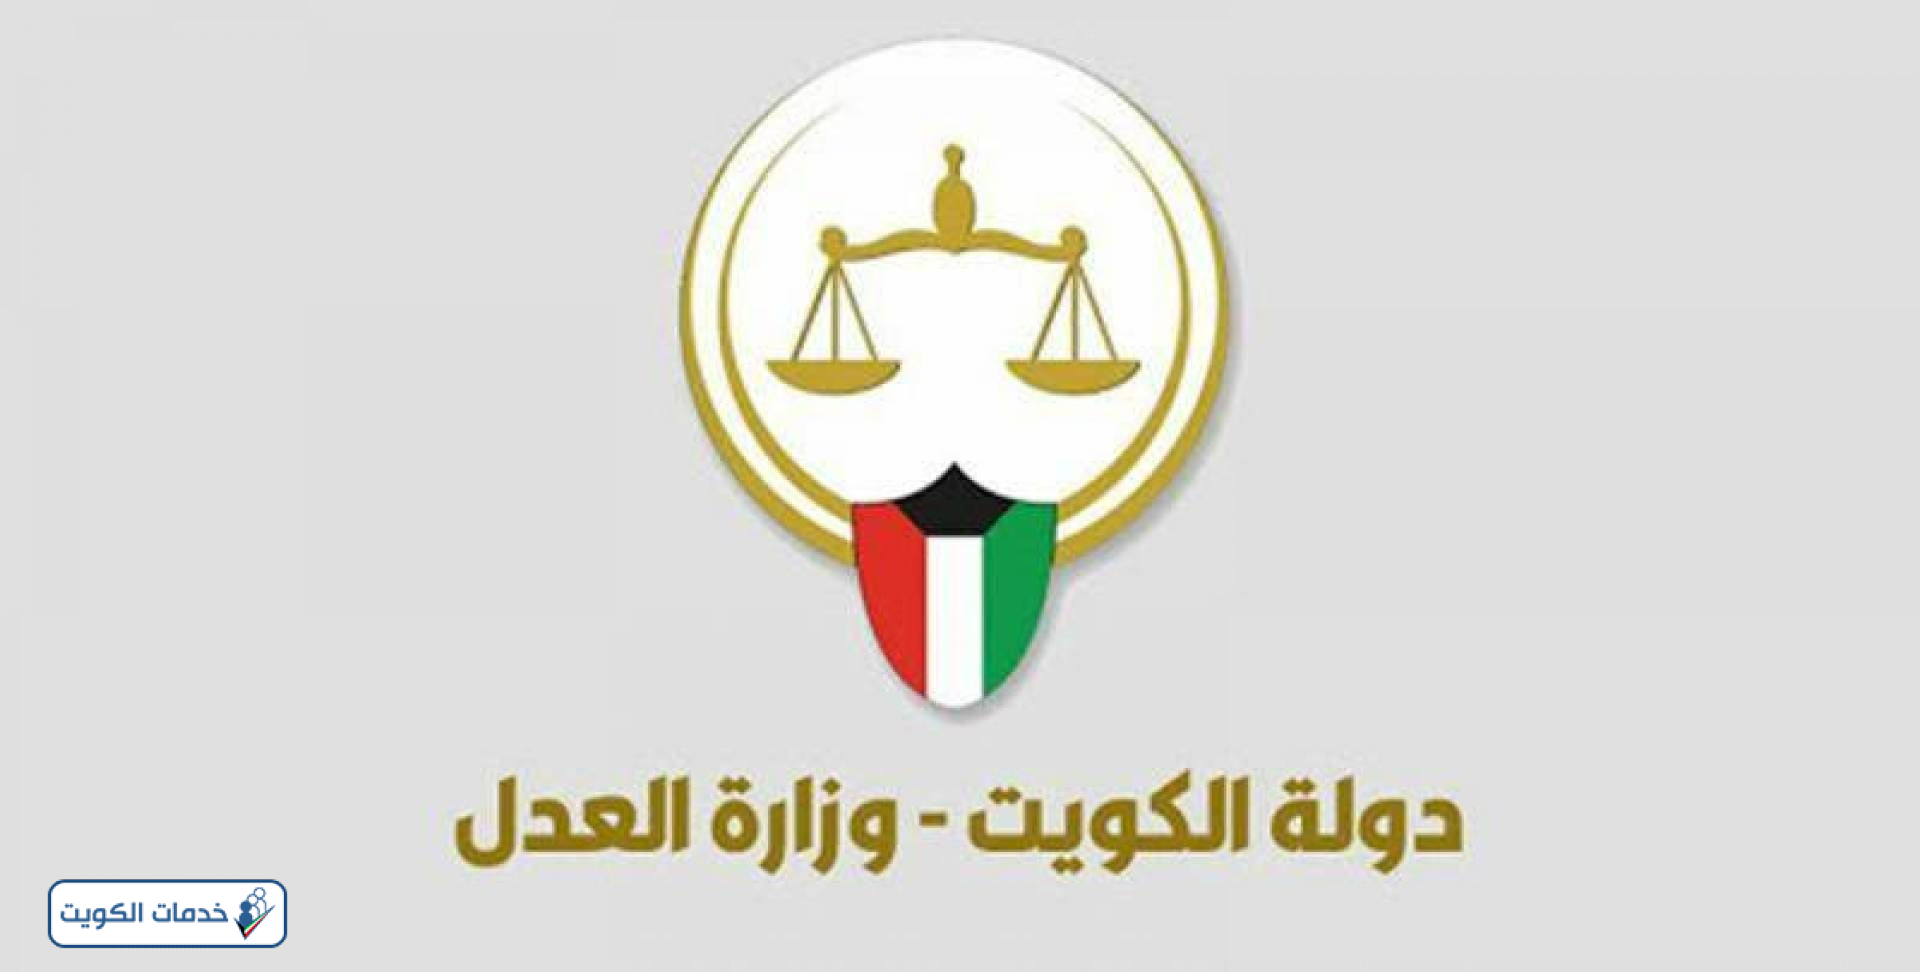 الطلاق بالتراضي في محاكم الكويت